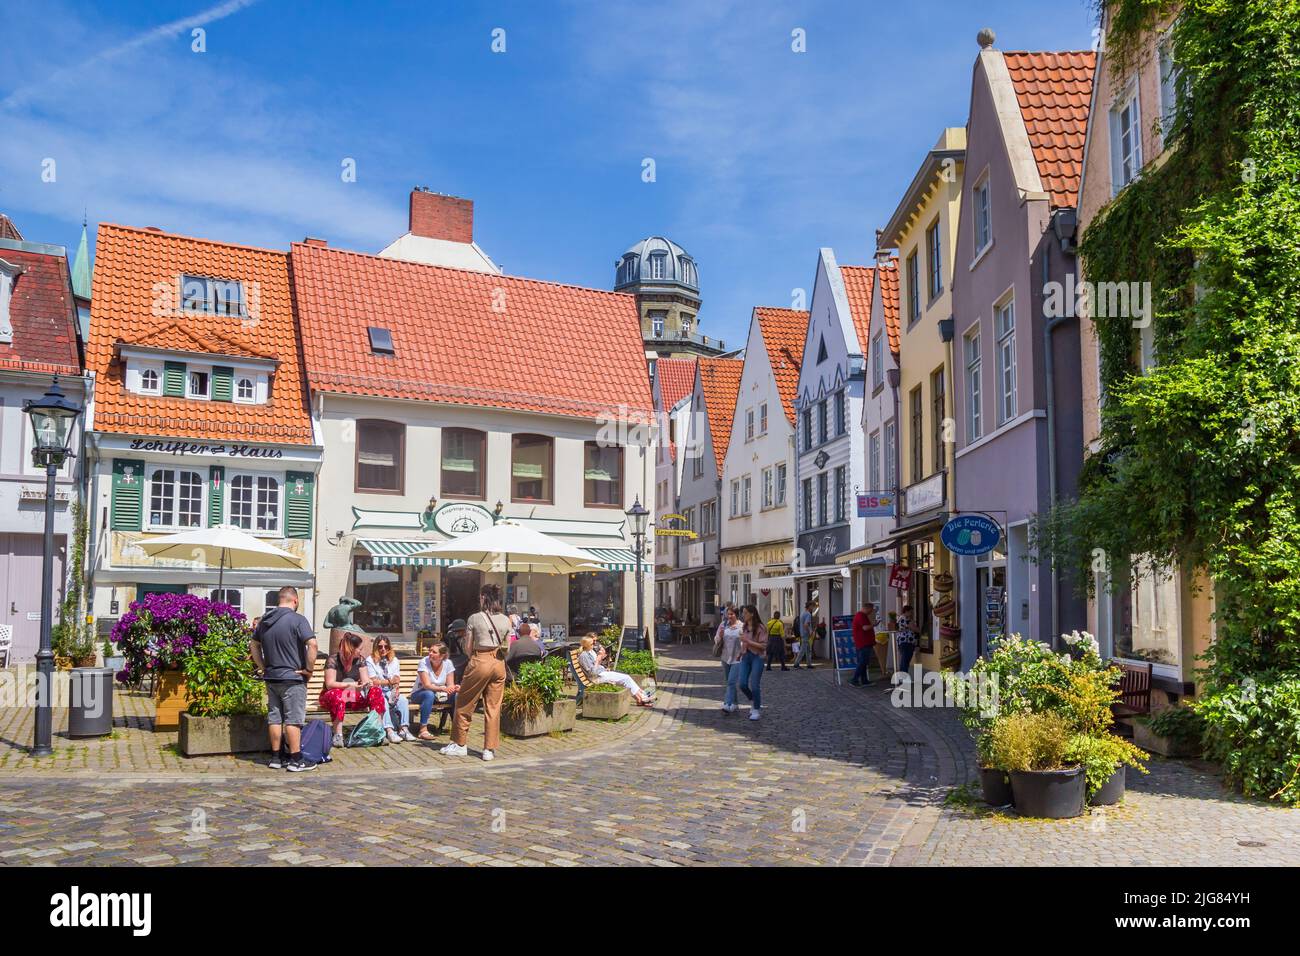 Pequeña plaza en el barrio Schnoor de Bremen, Alemania Foto de stock